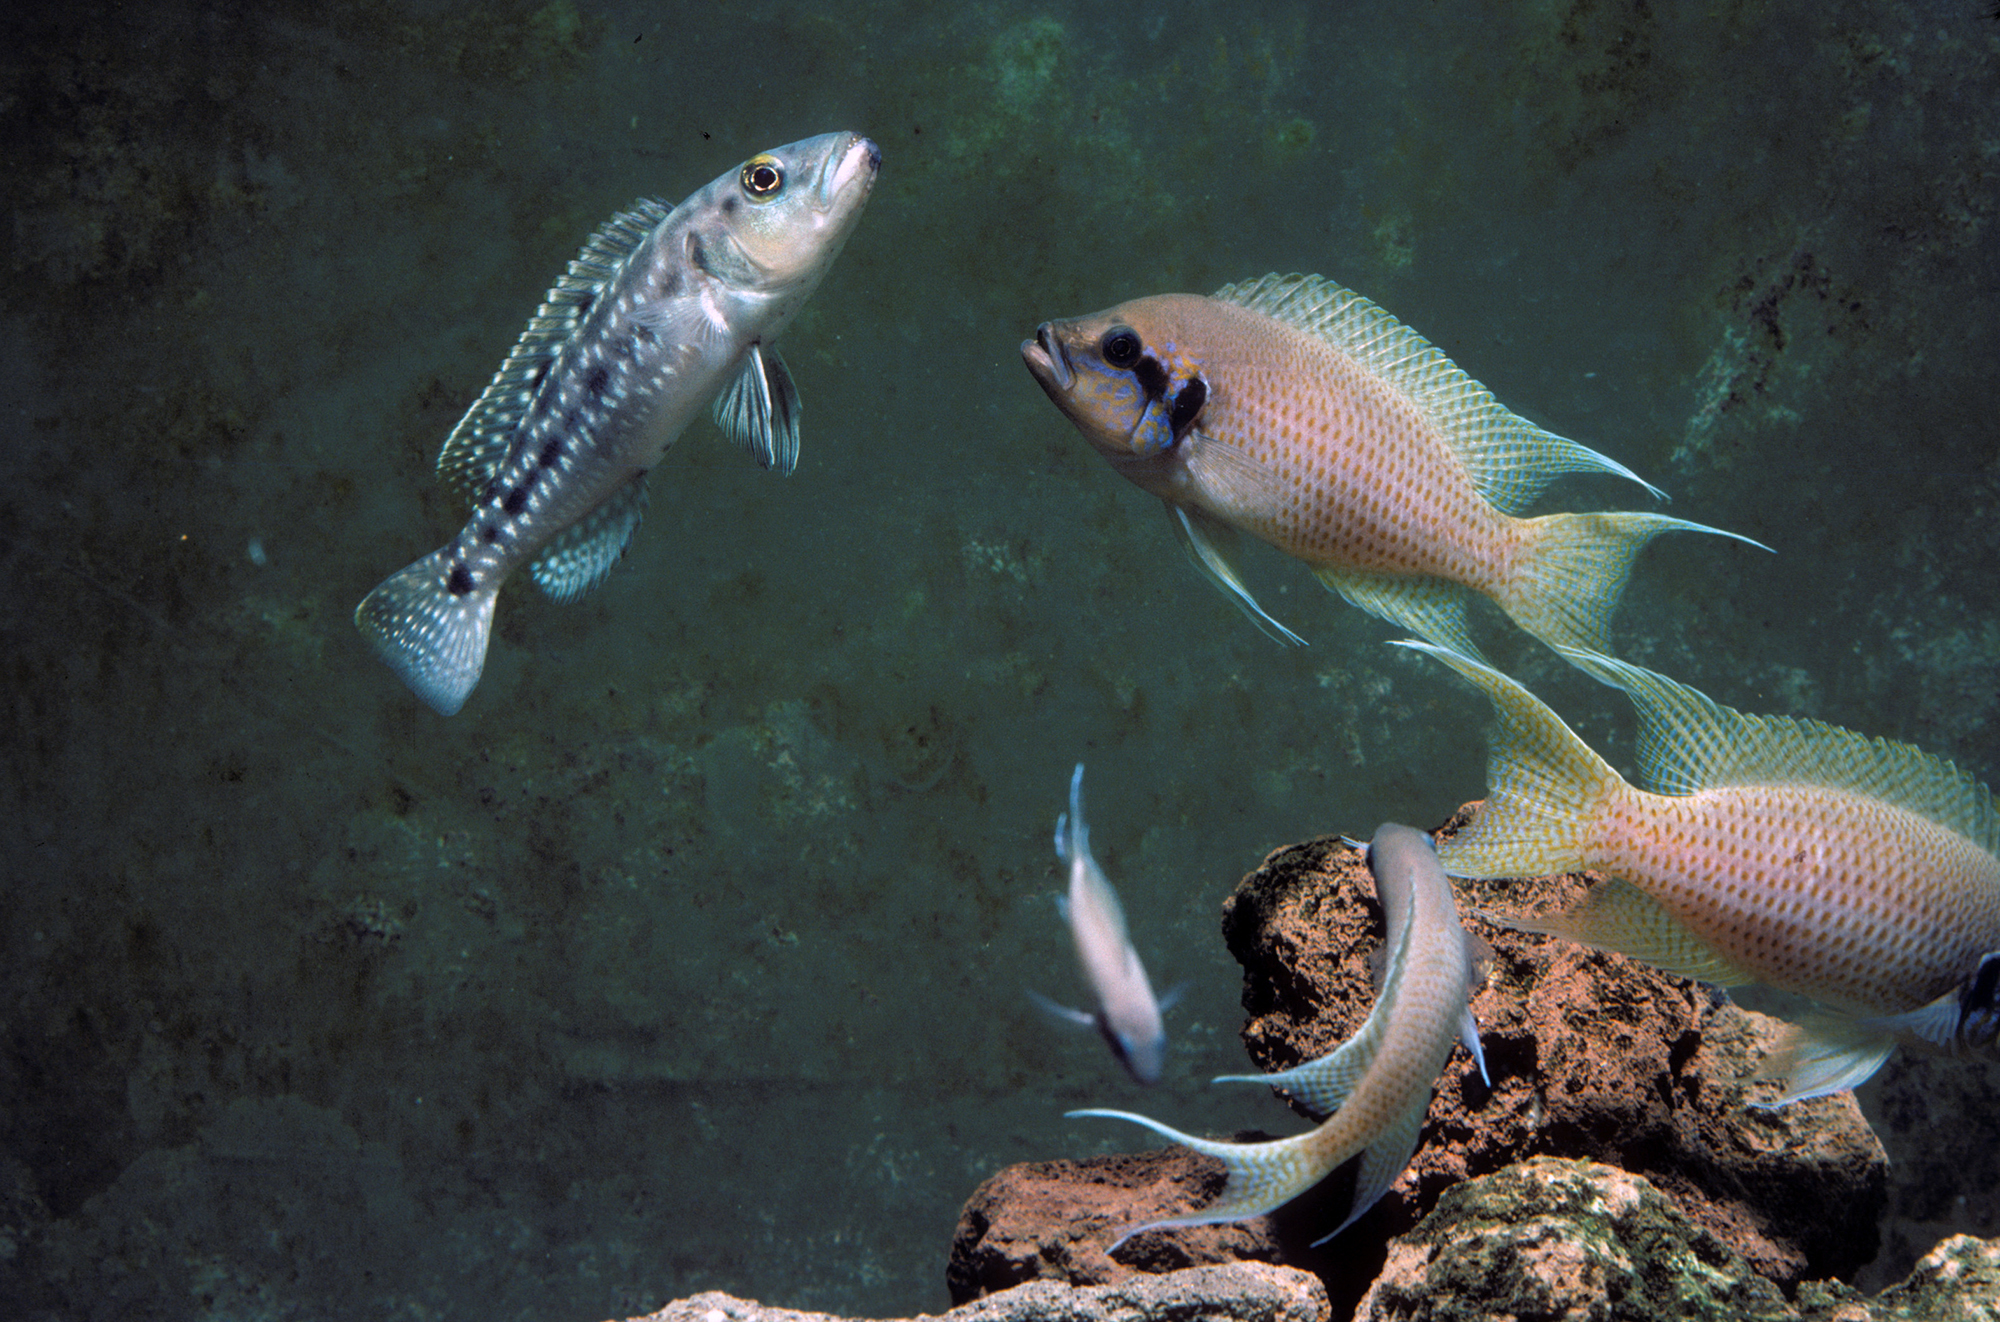 Ein Brutfisch einer natürlichen Buntbarsch-Gruppe greift einen Räuber an.  Bild: Institut für Ökologie und Evolution, Universität Bern